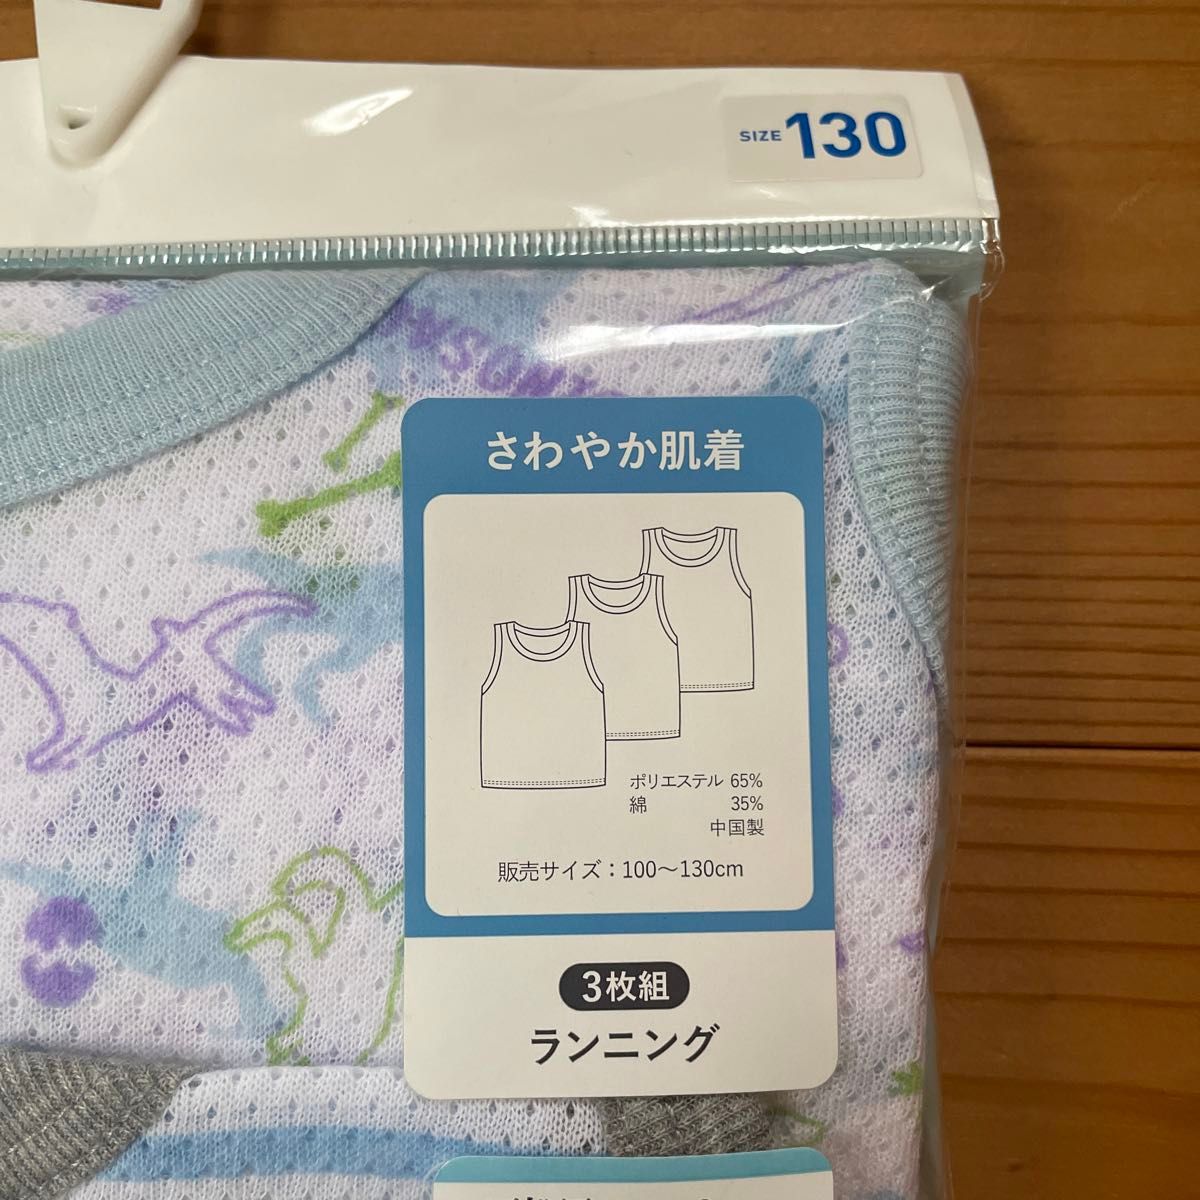 【新品・未使用】西松屋 恐竜柄男児タンクトップ 3枚組 130cm